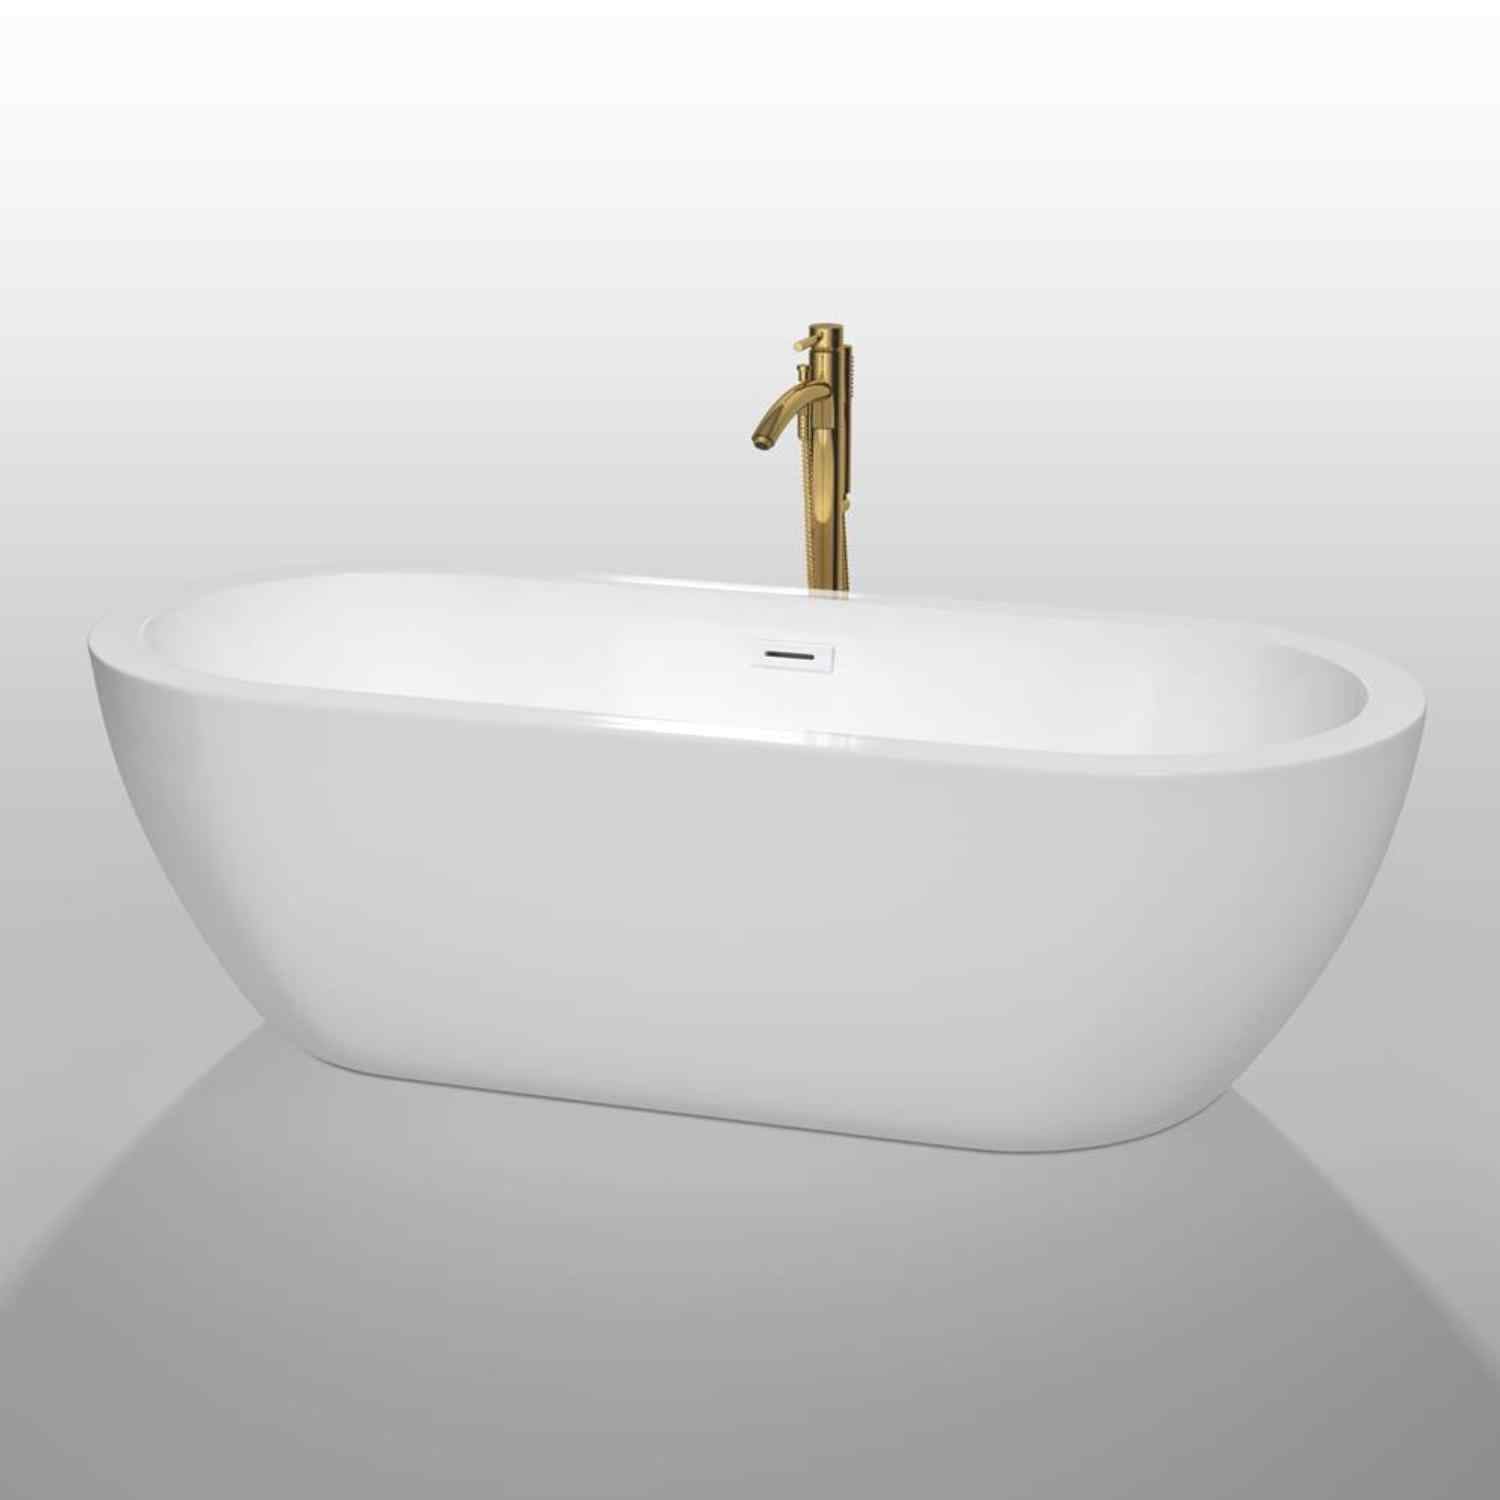 Wyndham collection Soho 72 Inch Freestanding Bathtub in White golden